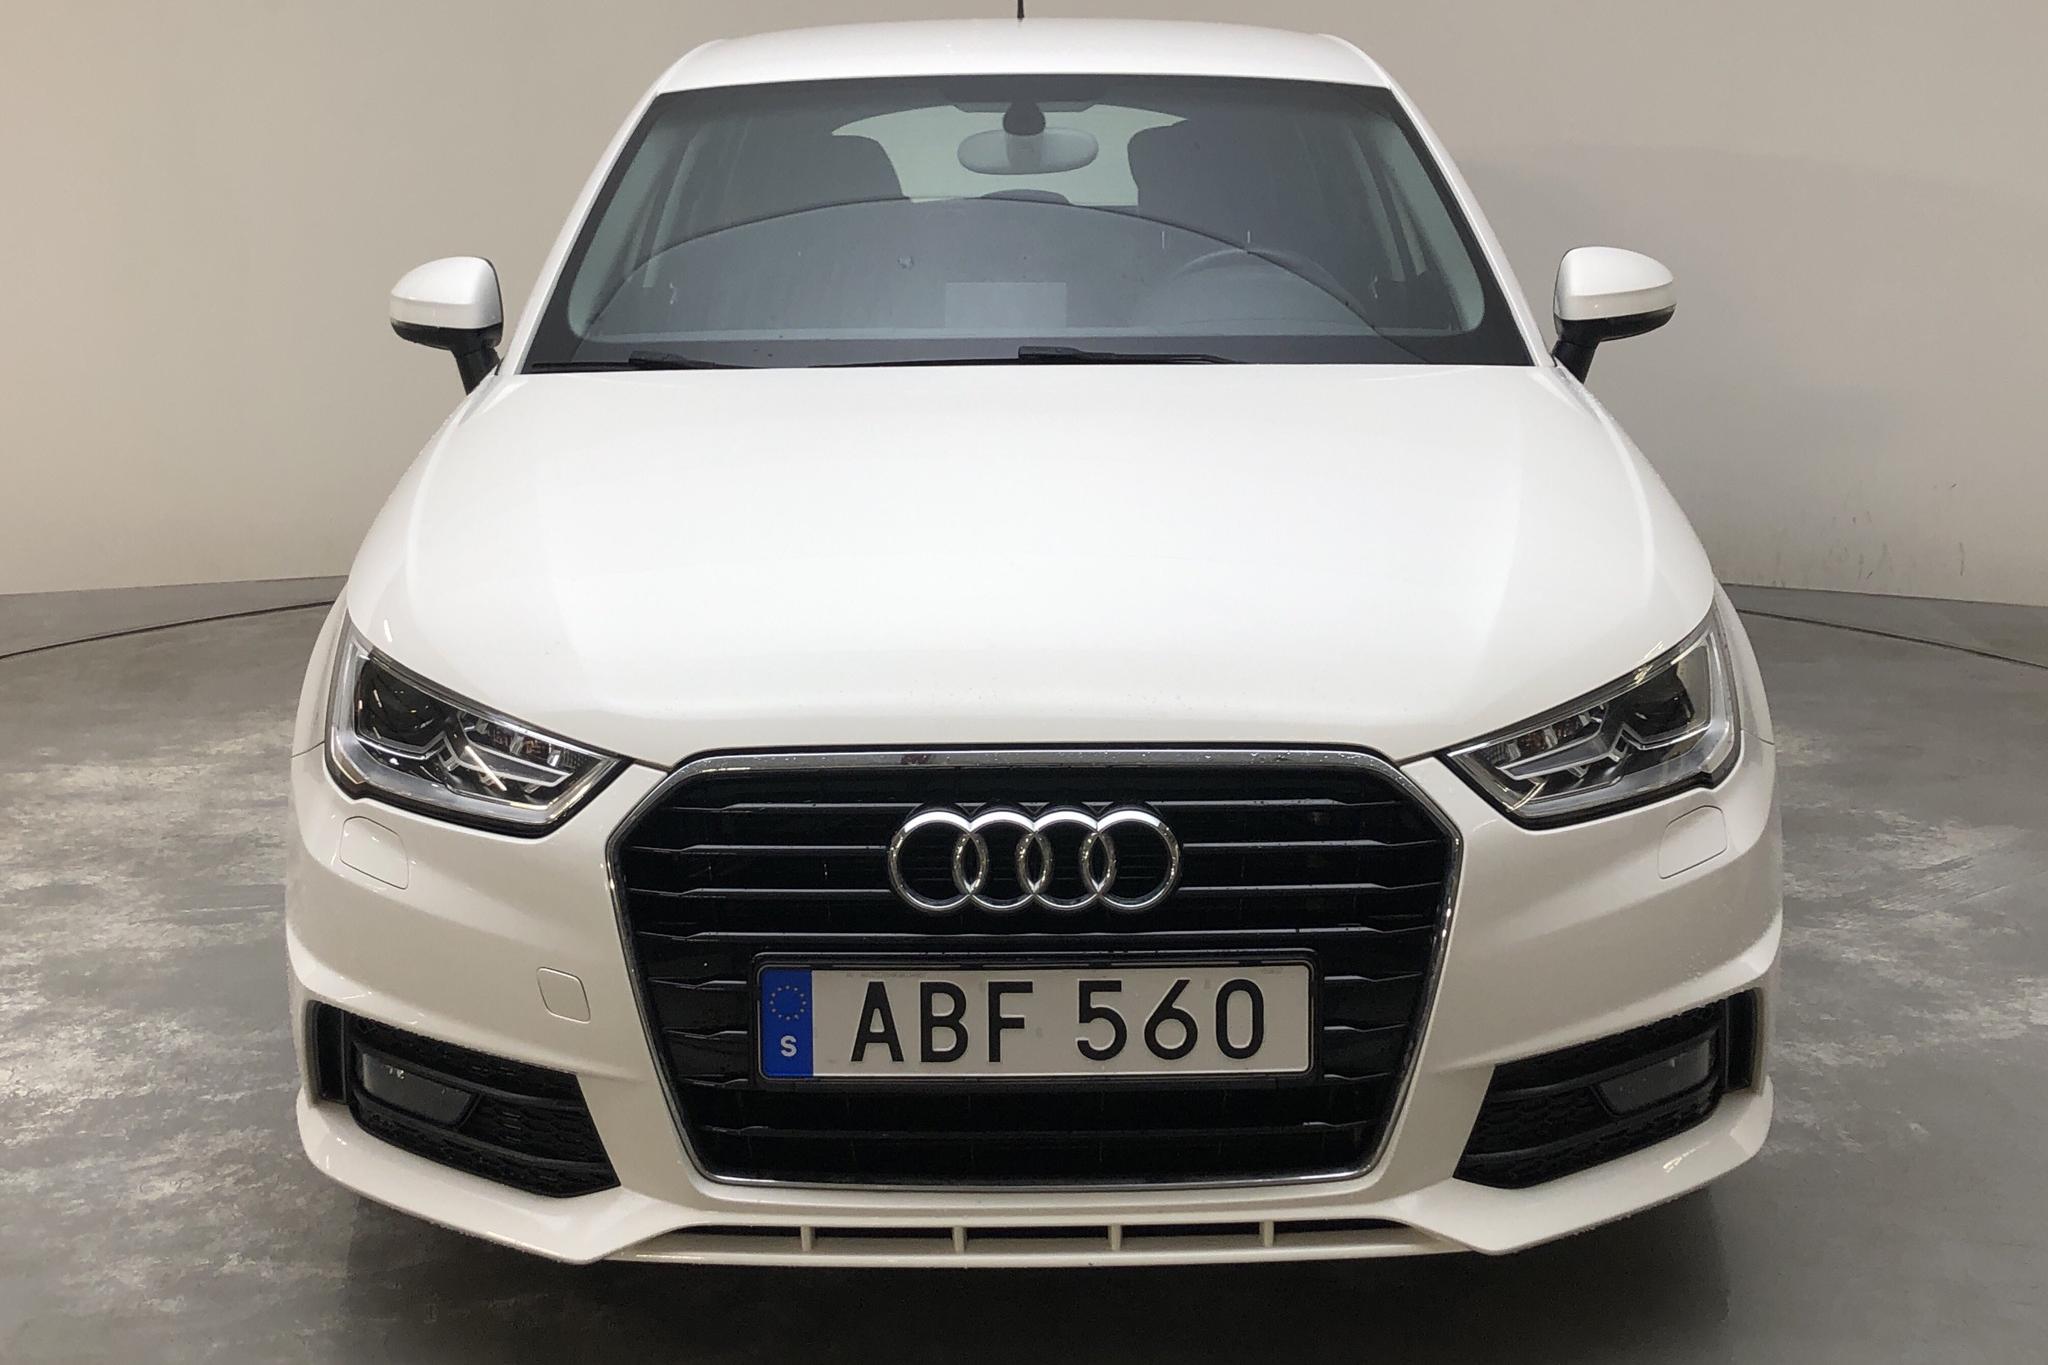 Audi A1 1.0 TFSI Sportback (95hk) - 70 370 km - Manual - white - 2016